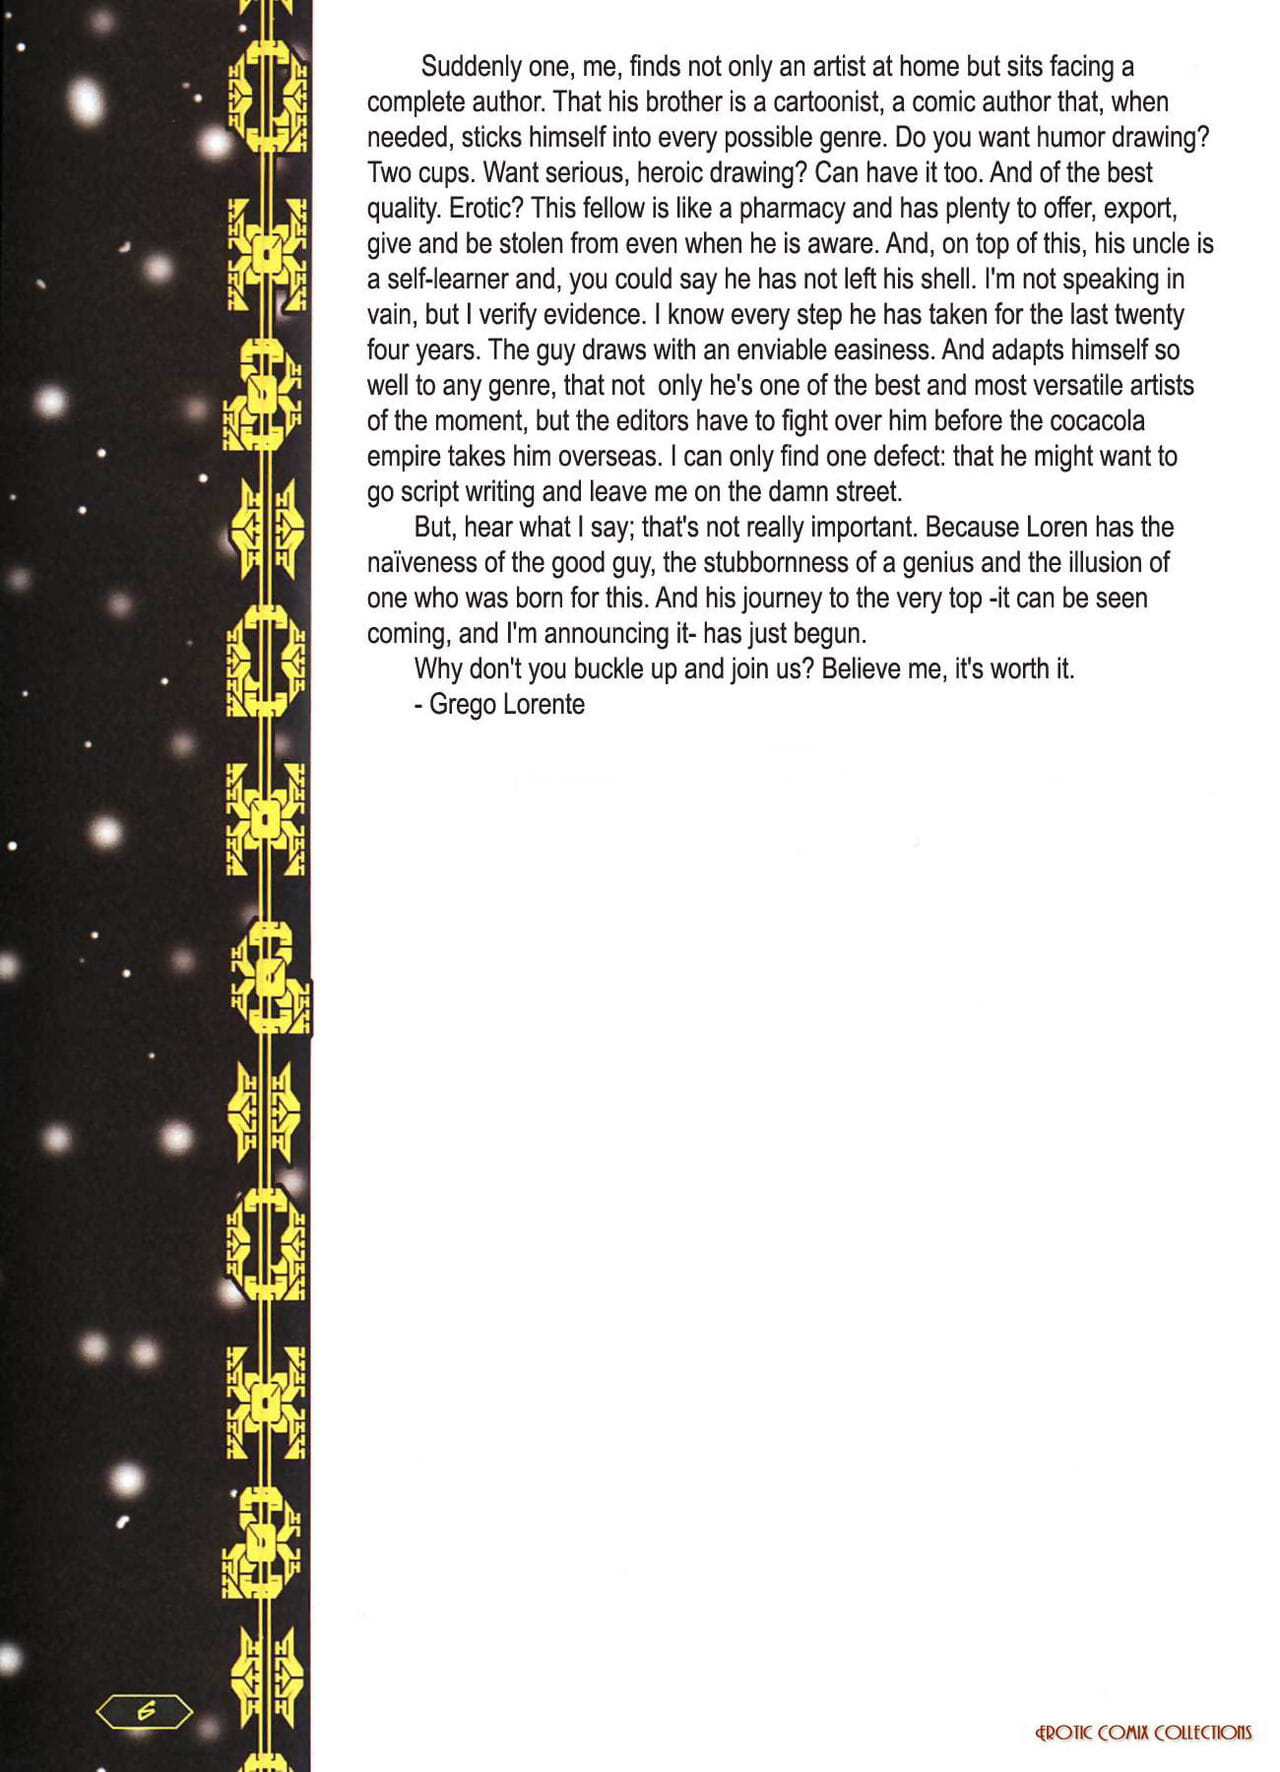 Star Warras page 1